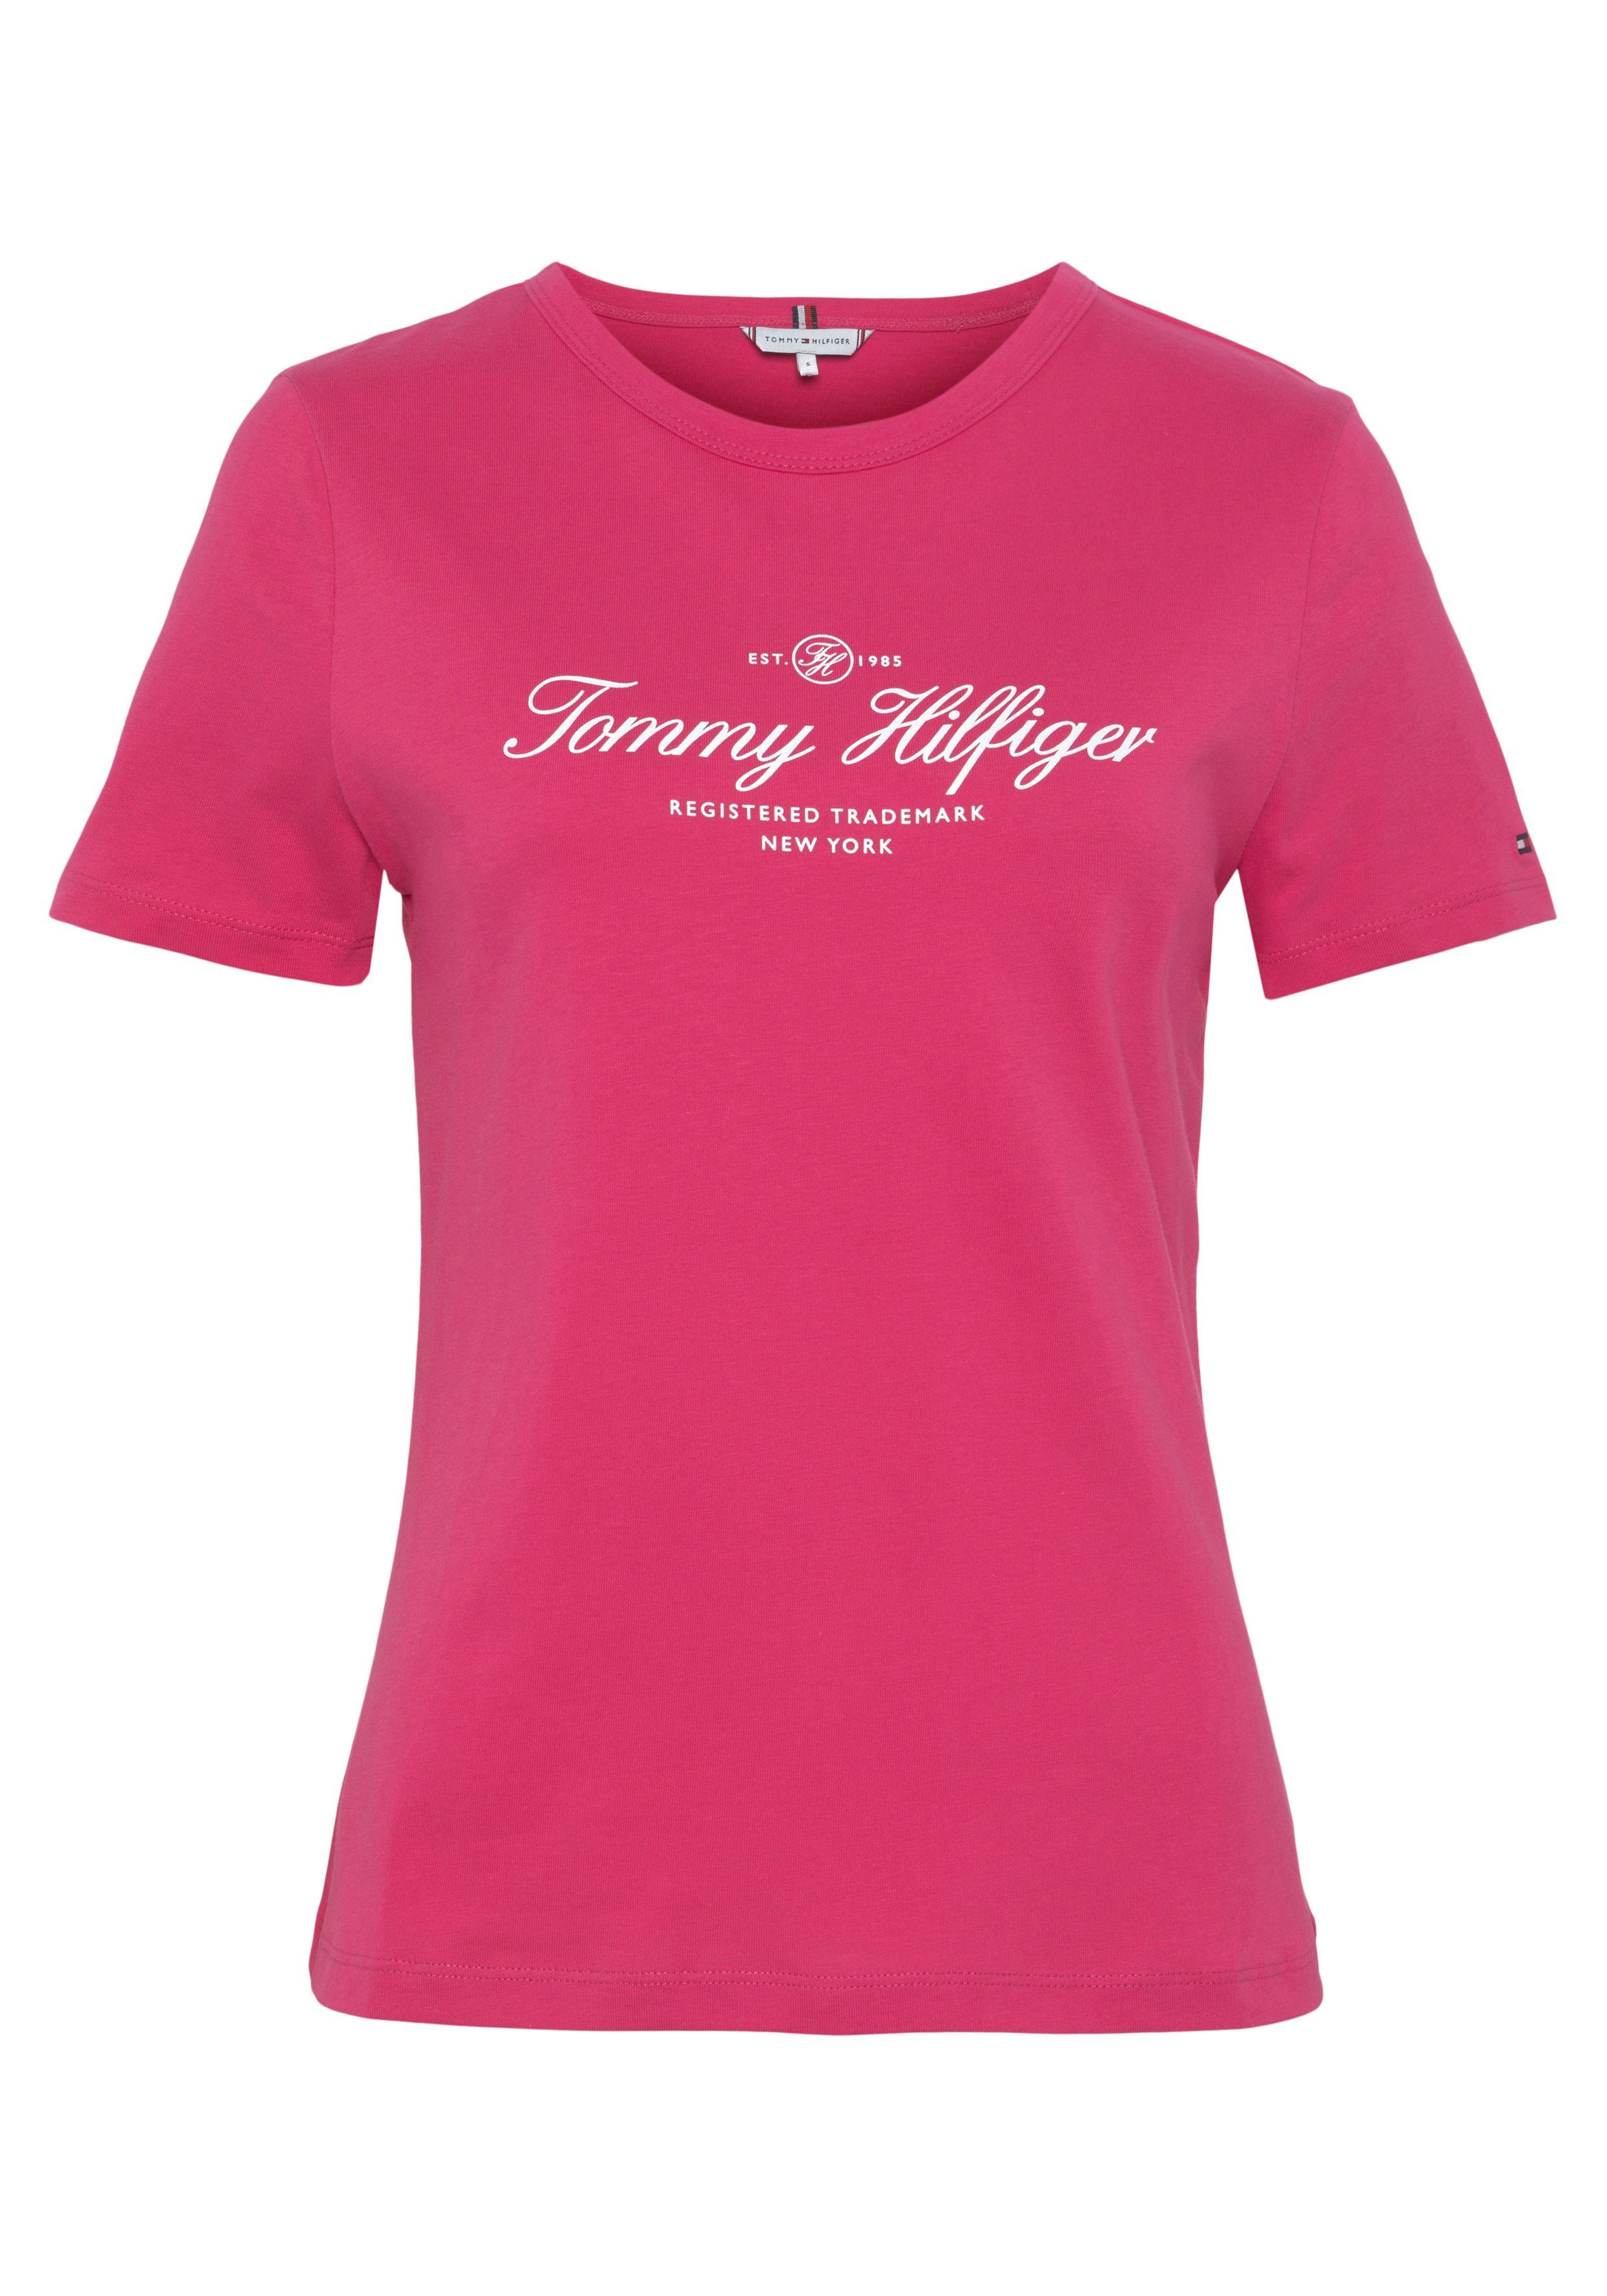 Rosa Tommy Hilfiger Shirts für Damen online kaufen | OTTO